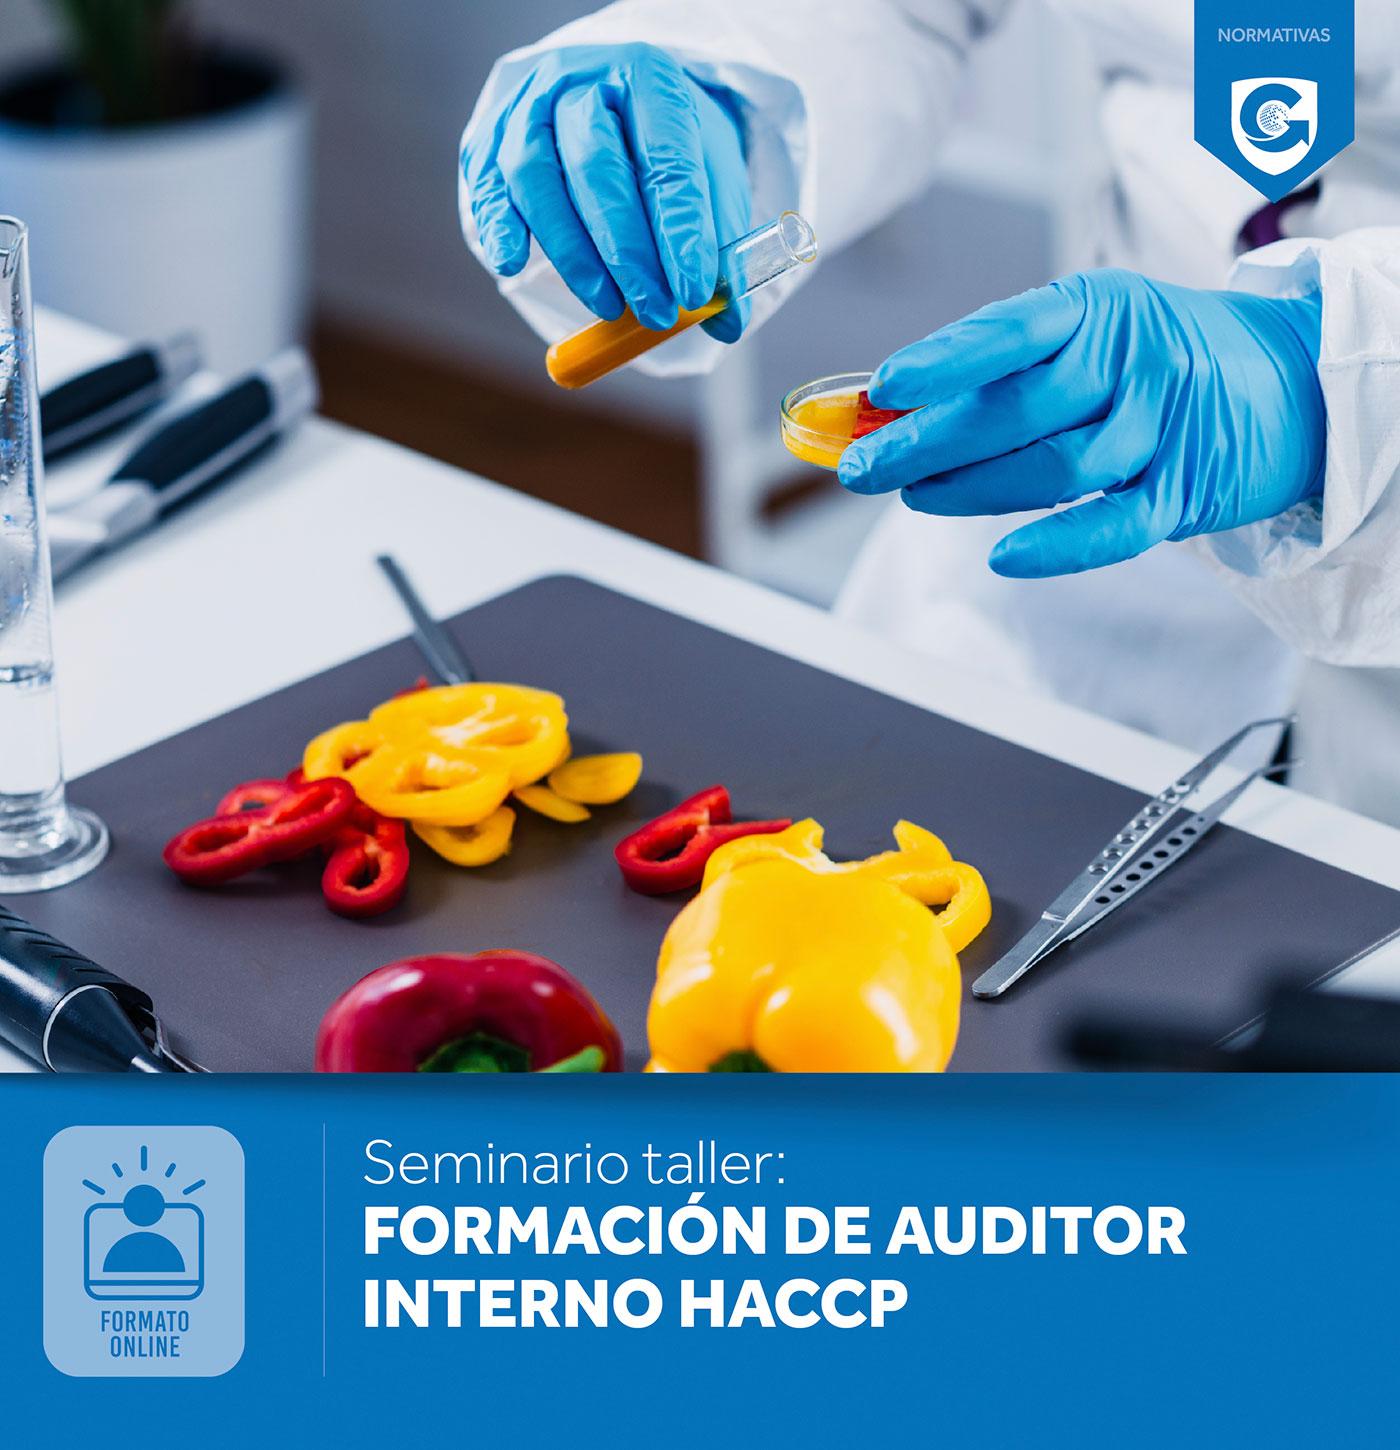 Seminario taller: FORMACIÓN DE AUDITOR INTERNO HACCP